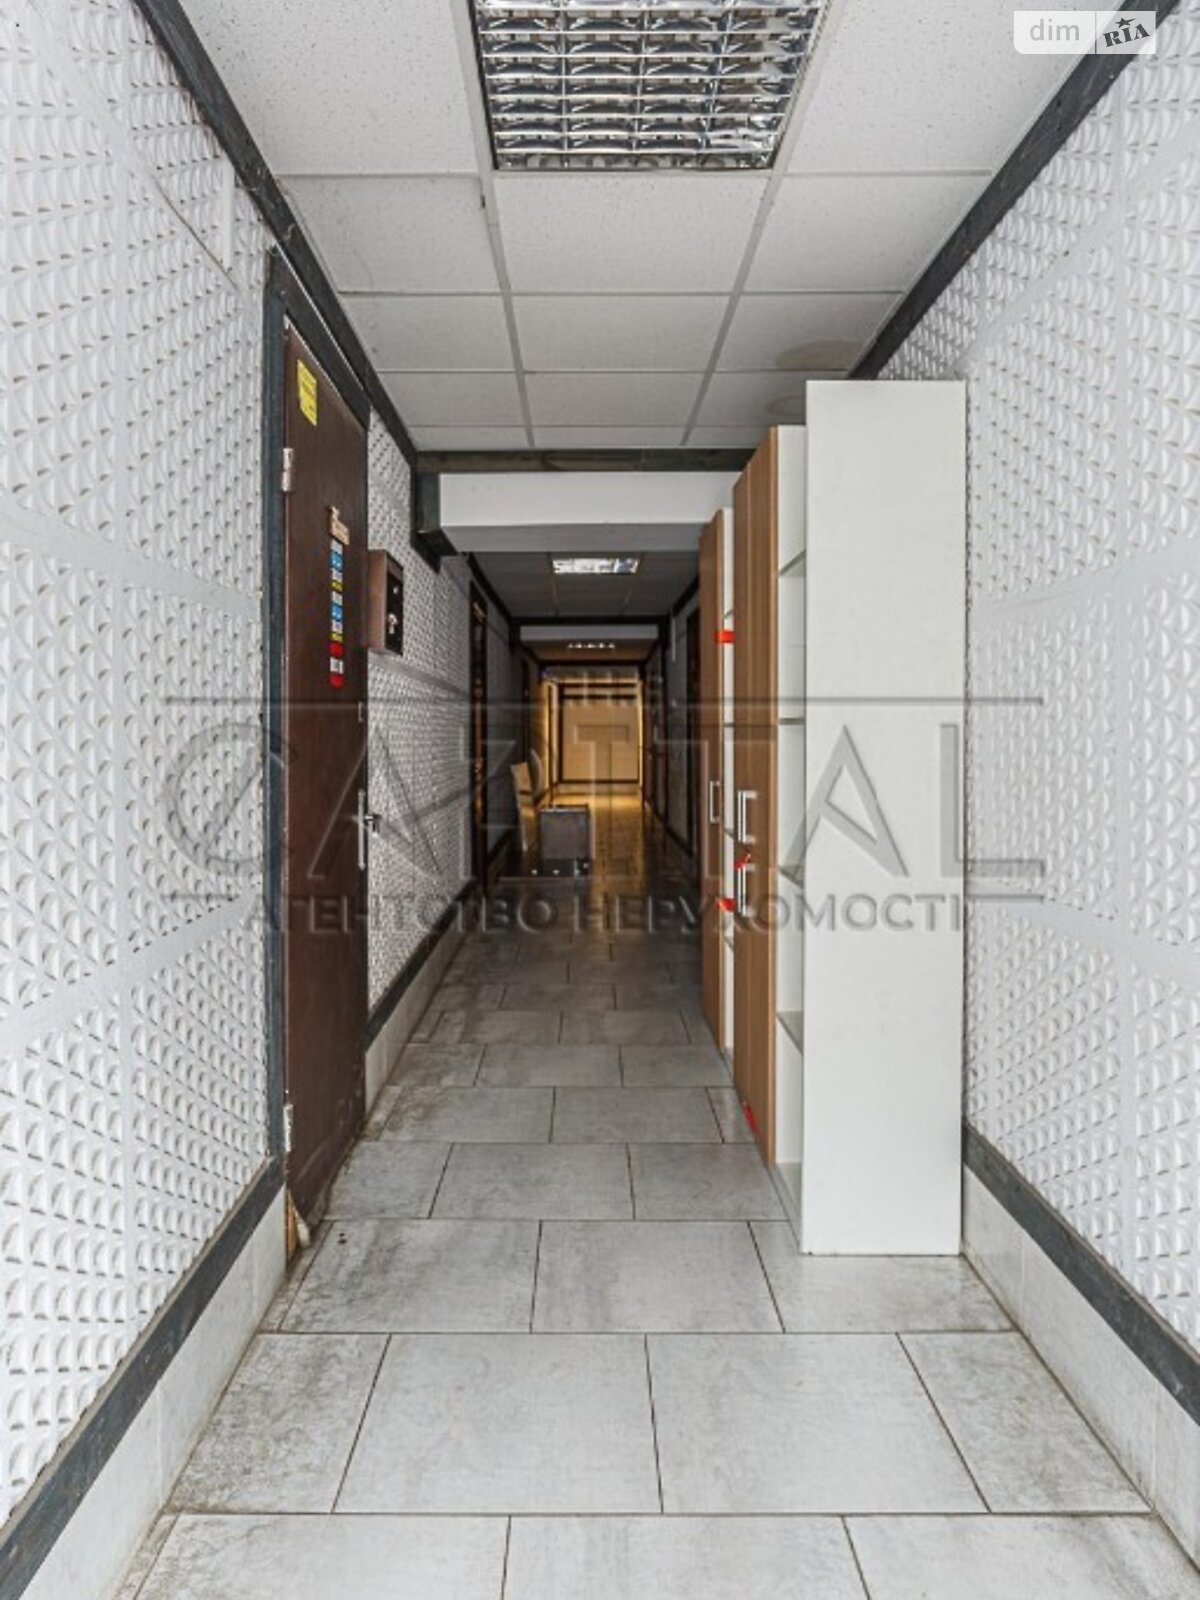 Аренда офисного помещения в Киеве, Глубочицкая улица 16, помещений -, этаж - 1 фото 1